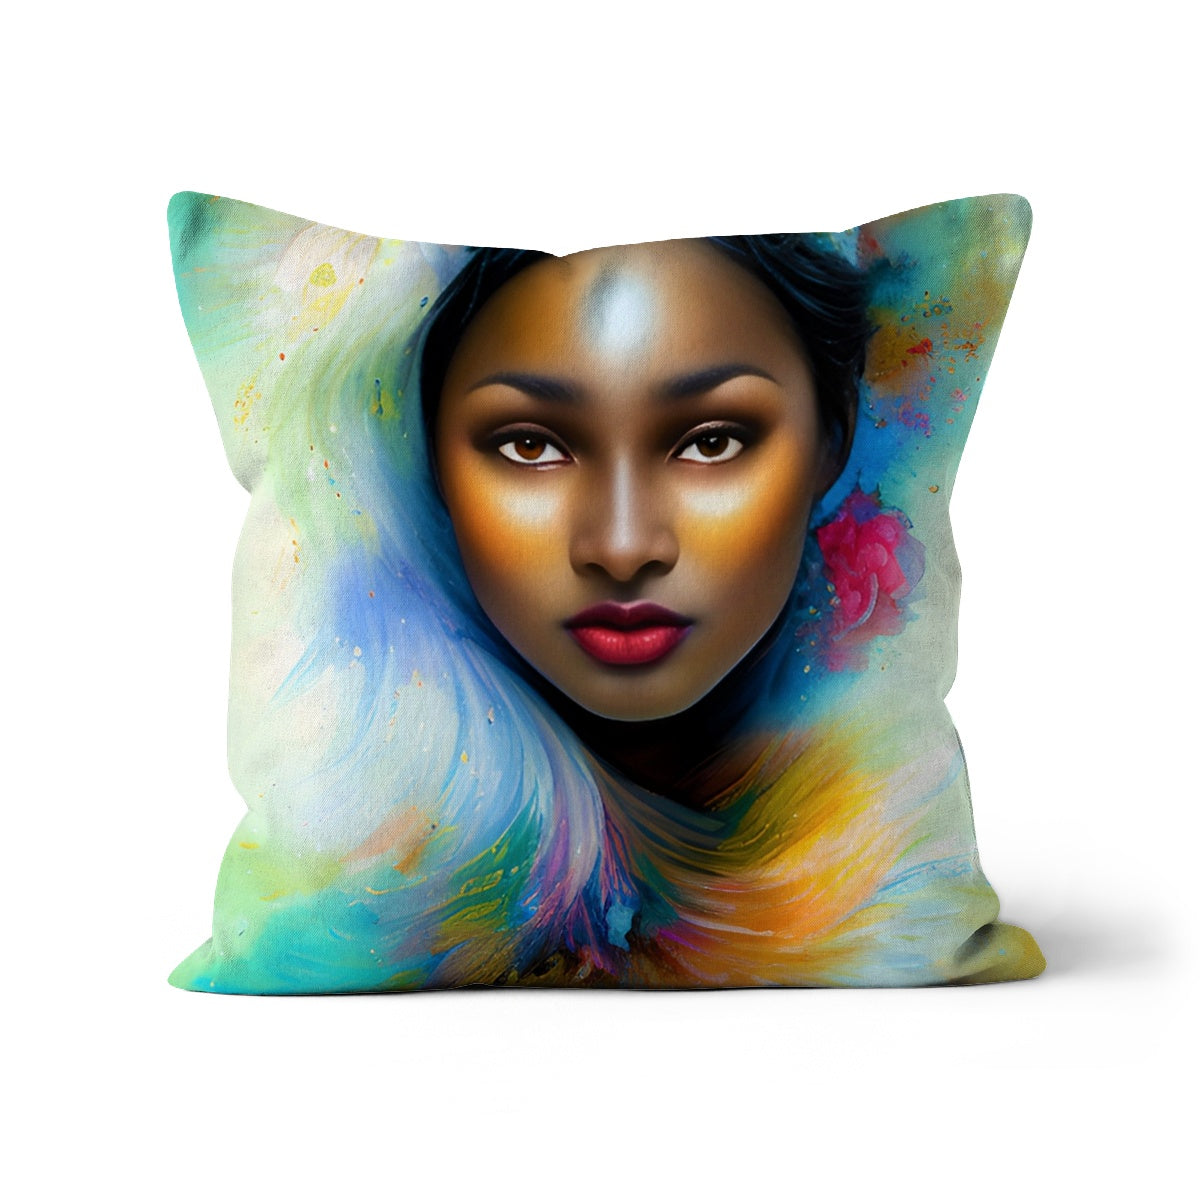 Goddess Surreal Cushion